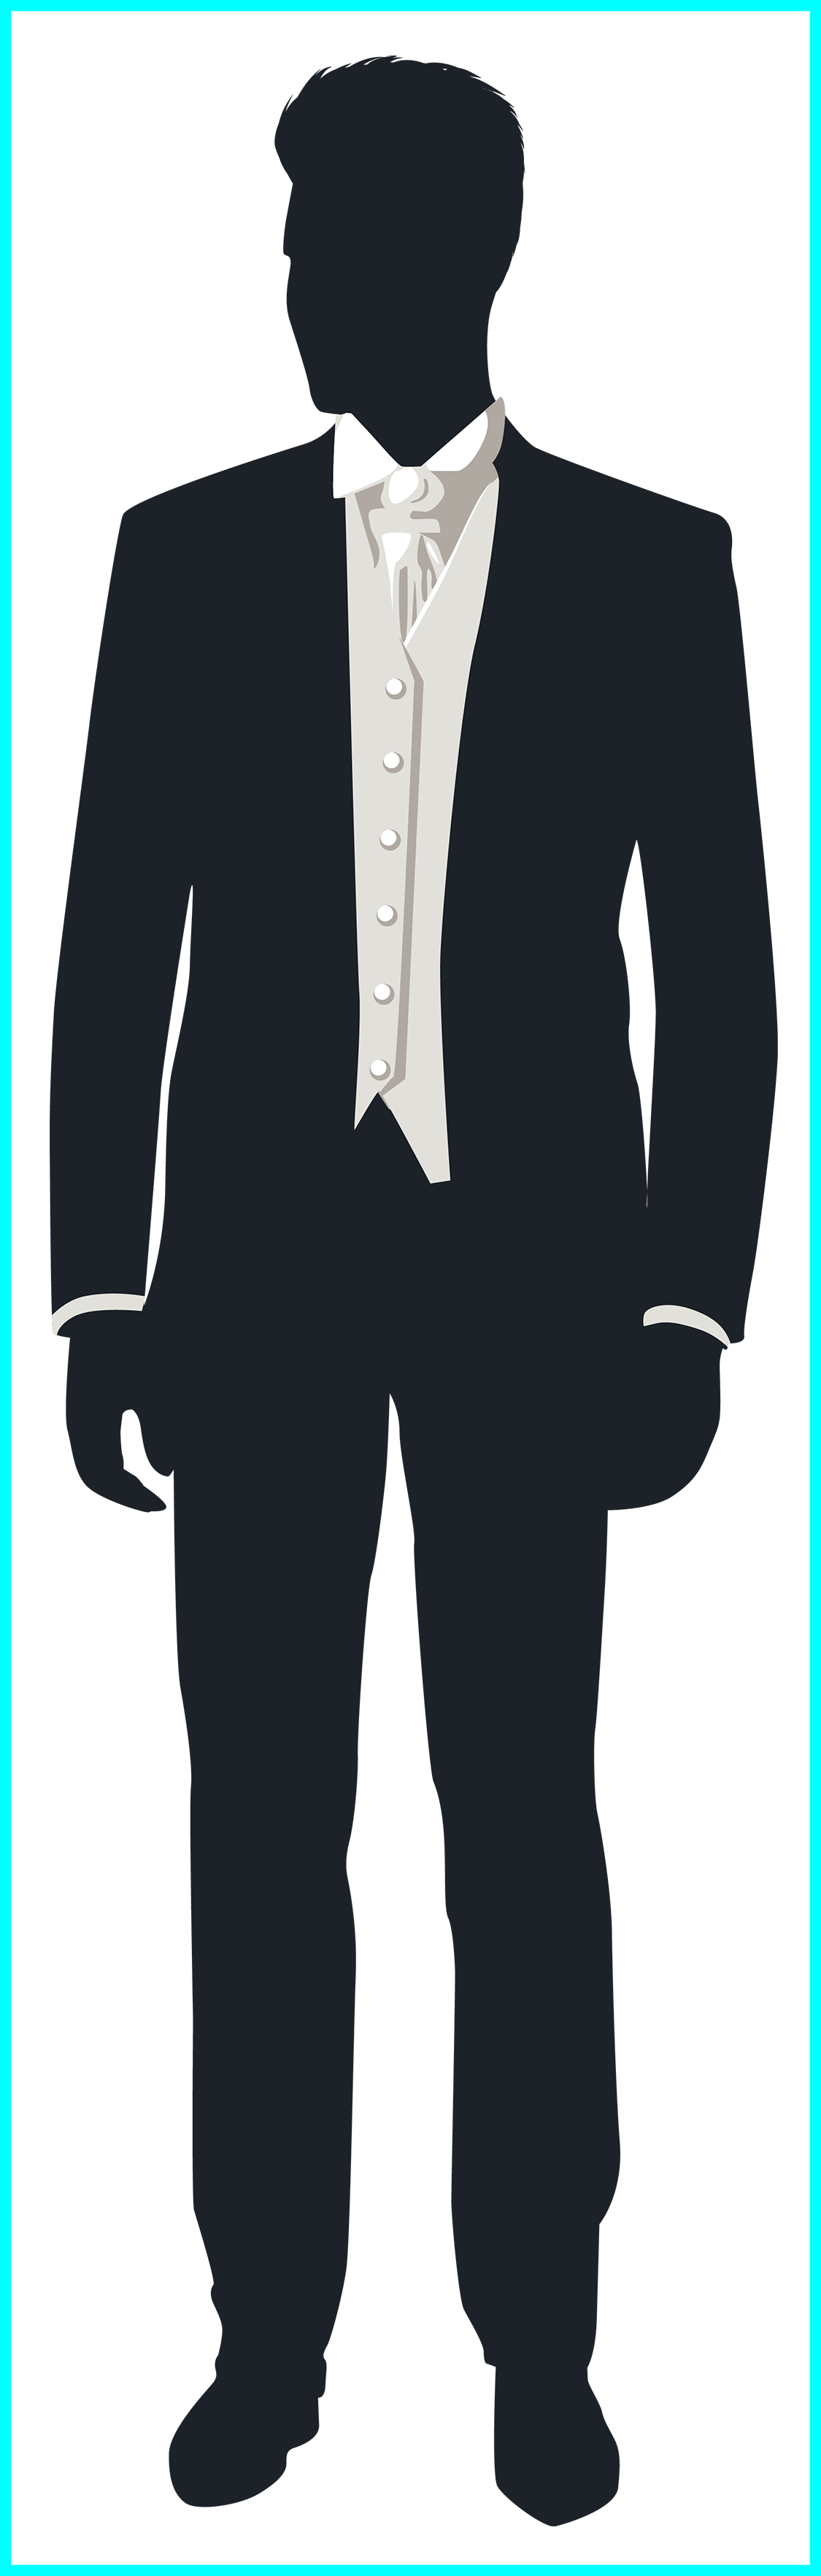 suit clipart grey suit